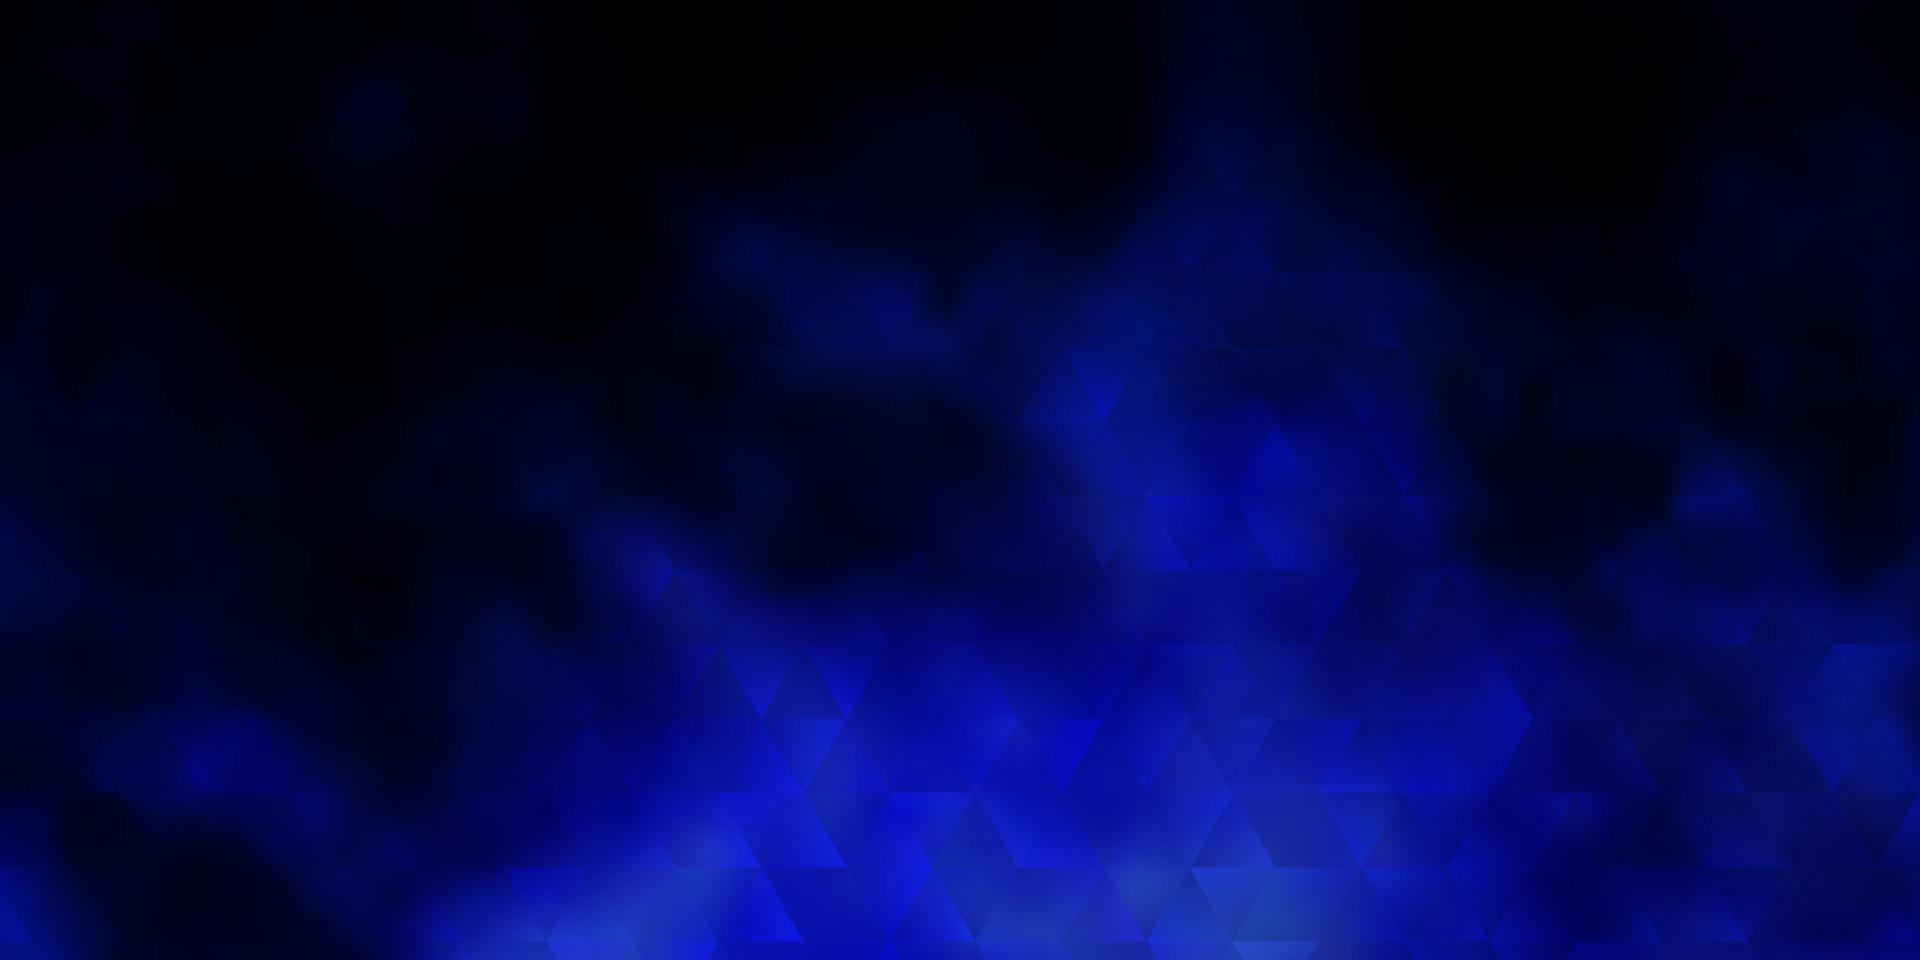 plantilla de vector azul oscuro con cristales, triángulos.